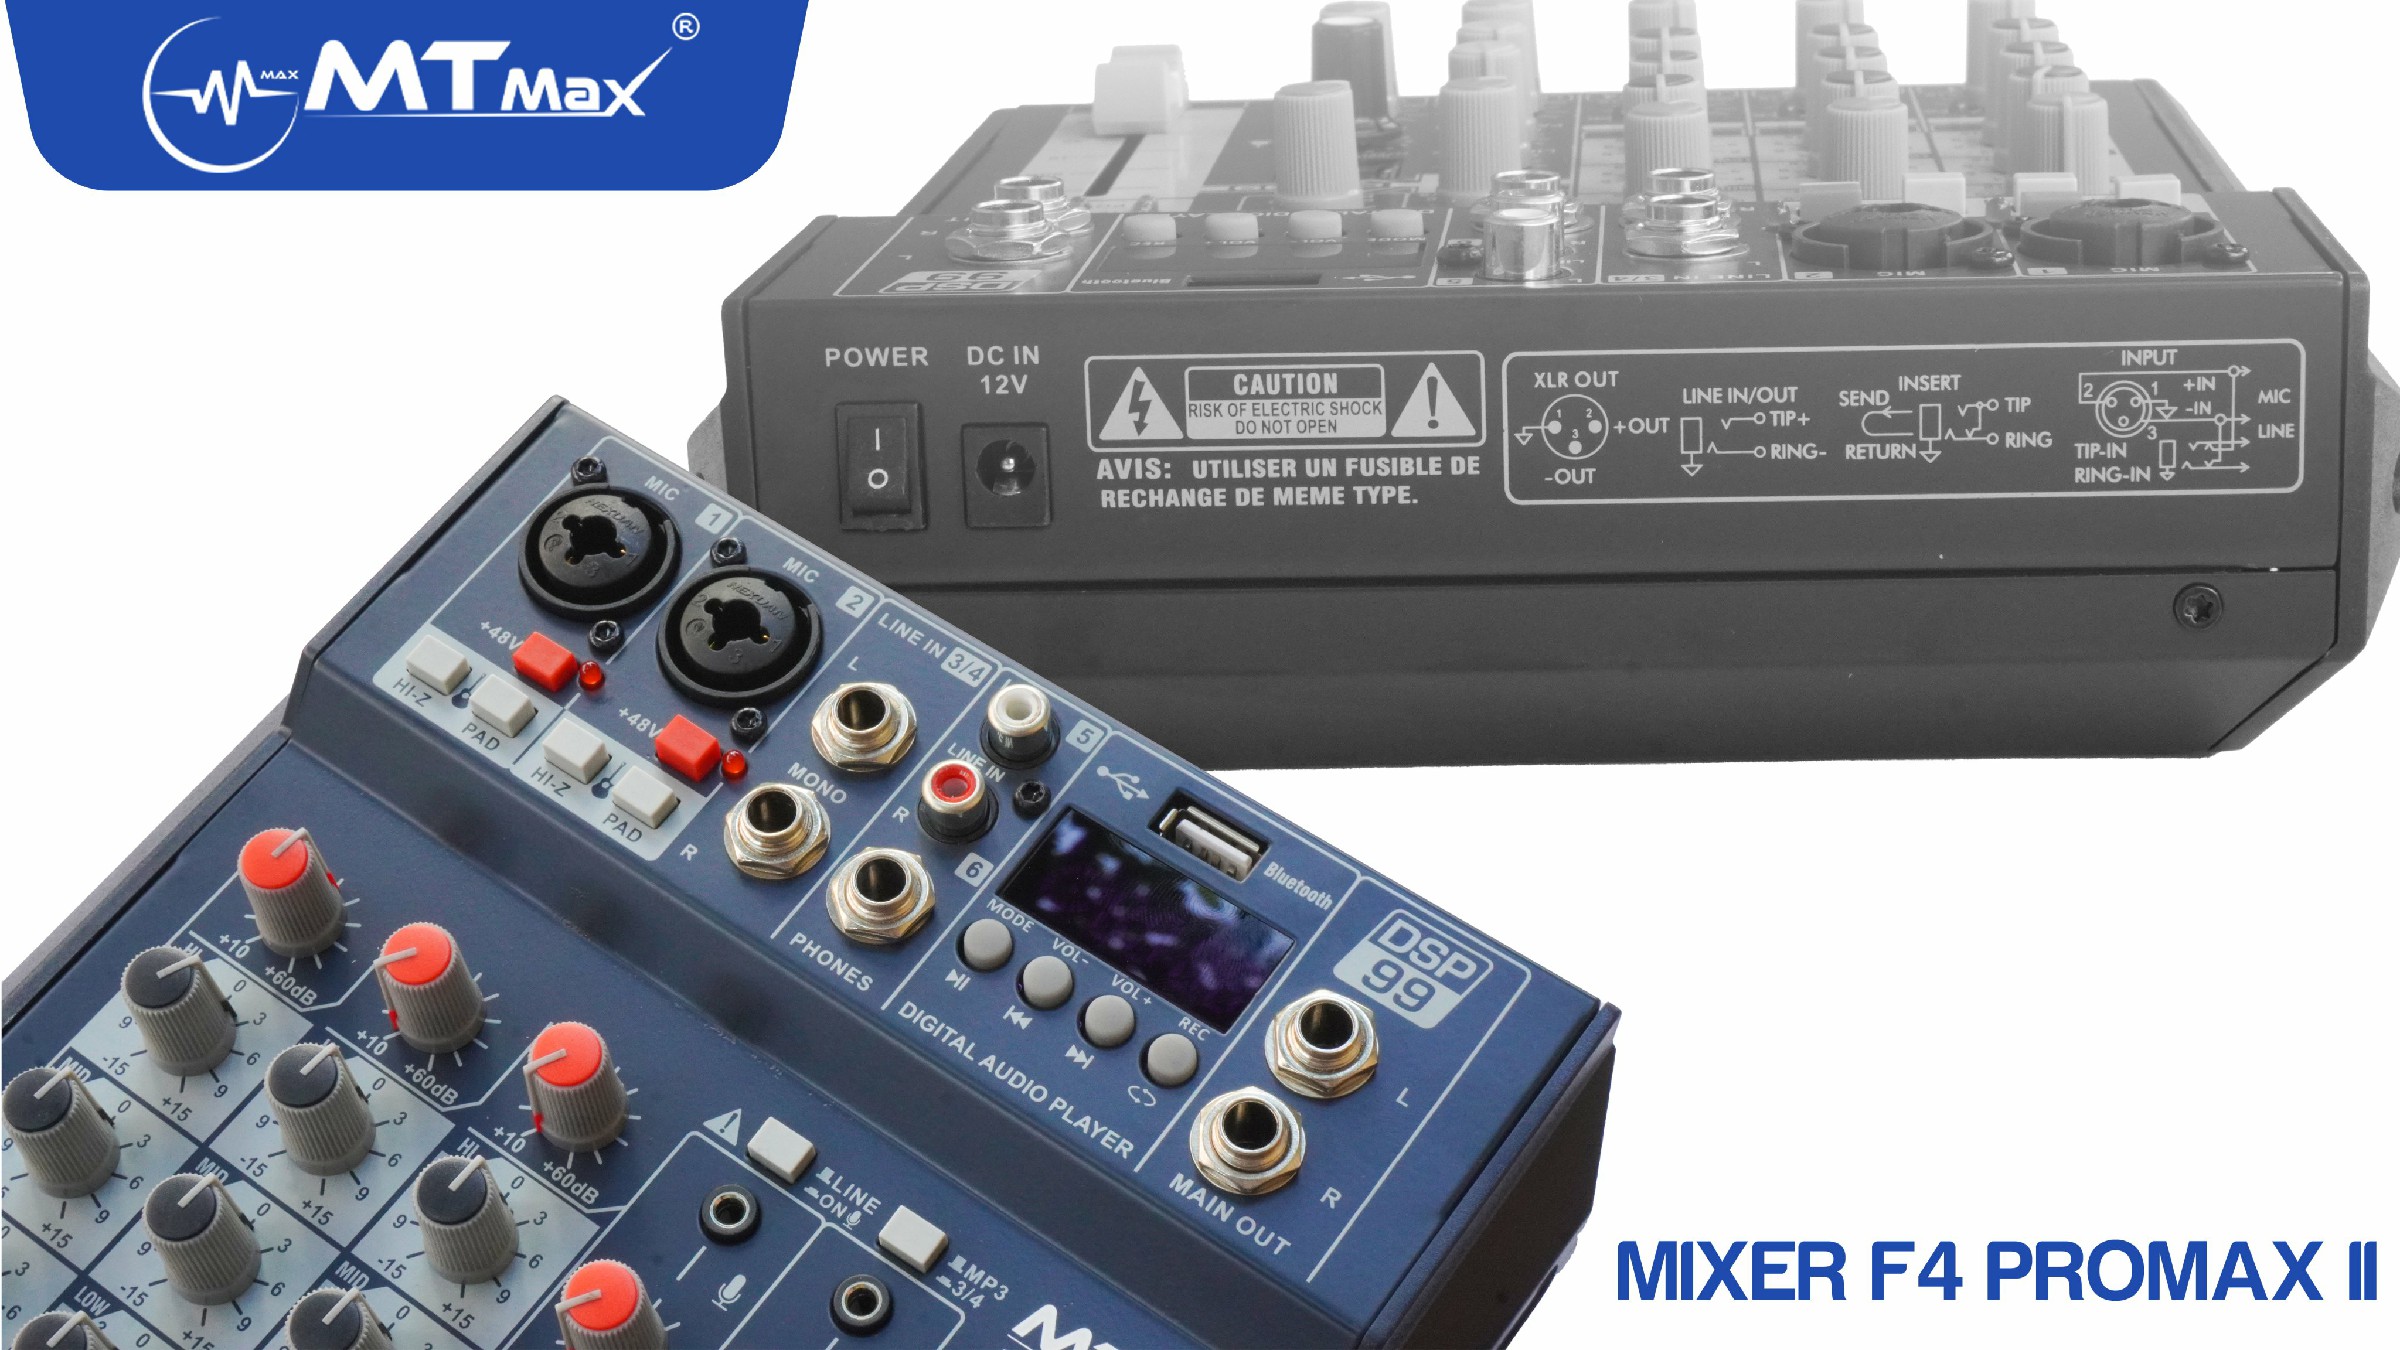 Bàn trộn Mixer MTMax F4 ProMax II - 99 chế độ vang số DSP - 4 kênh, 2 màn hình led hiển thị - Có Bluetooth, nguồn 48V cho micro condenser - Chuyển đổi thành sound card thu âm chuyên nghiệp - Dùng được với loa kéo, amply, dàn karaoke - Hàng chính hãng